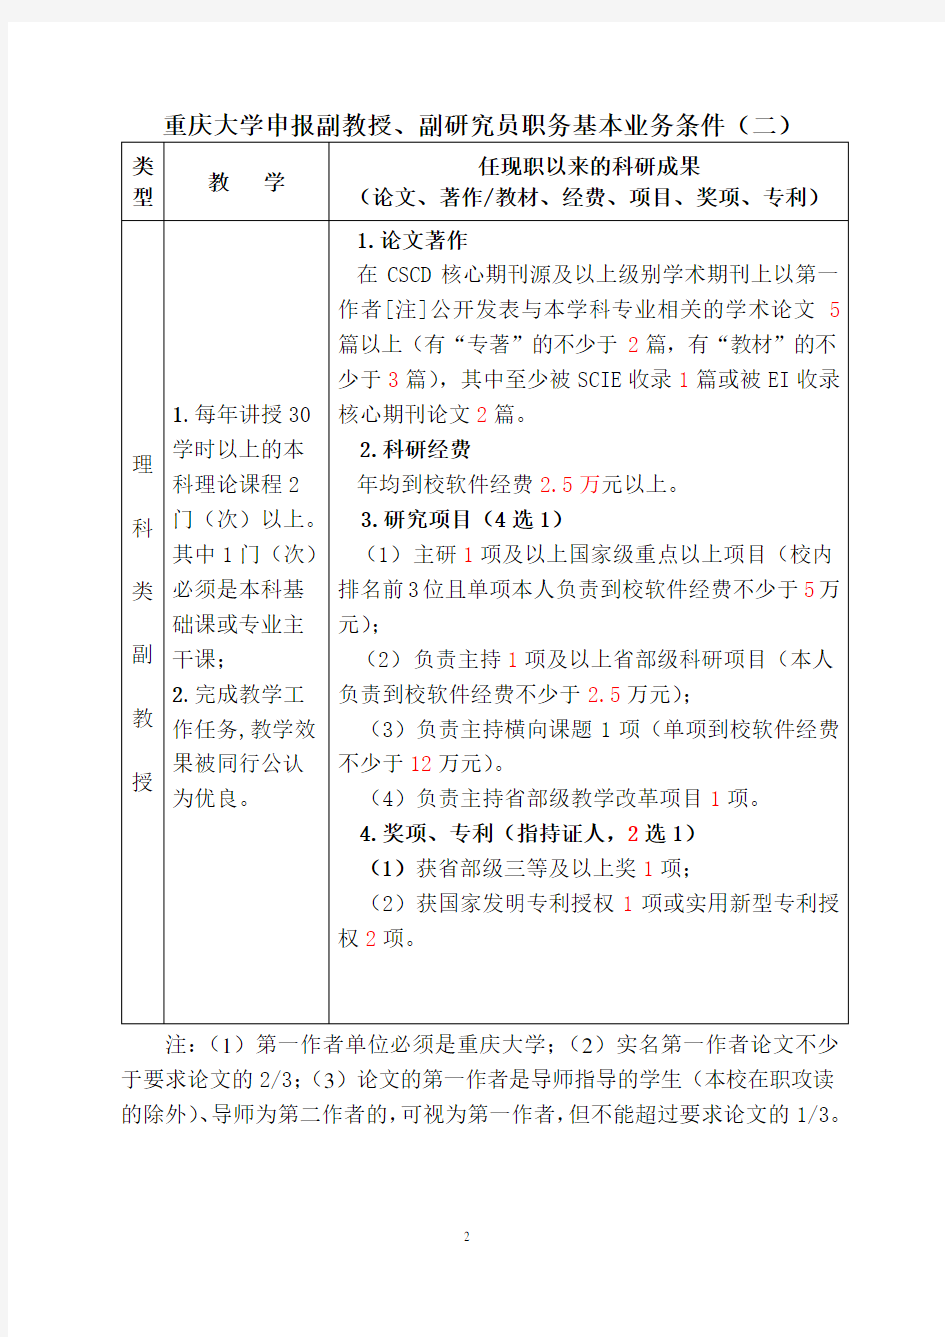 4.重庆大学申报副教授、副研究员职务基本业务条件